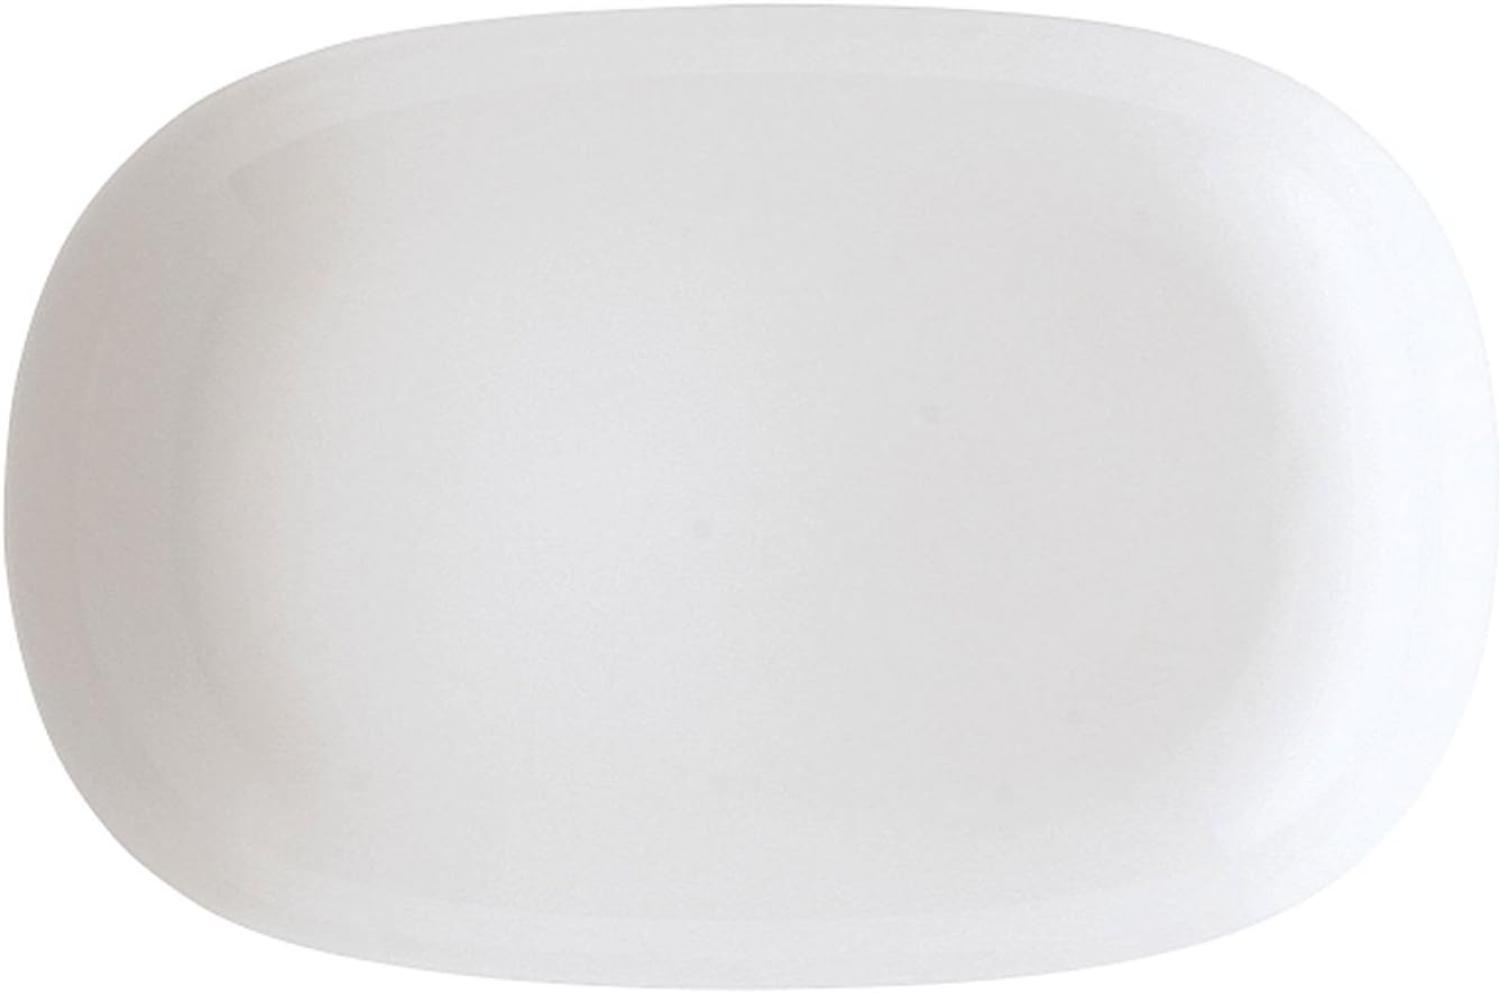 Arzberg Form 1382 Platte, Oval, Beilagenplatte, Speiseplatte, White, Porzellan, 32 cm, 41382-800001-12732 Bild 1